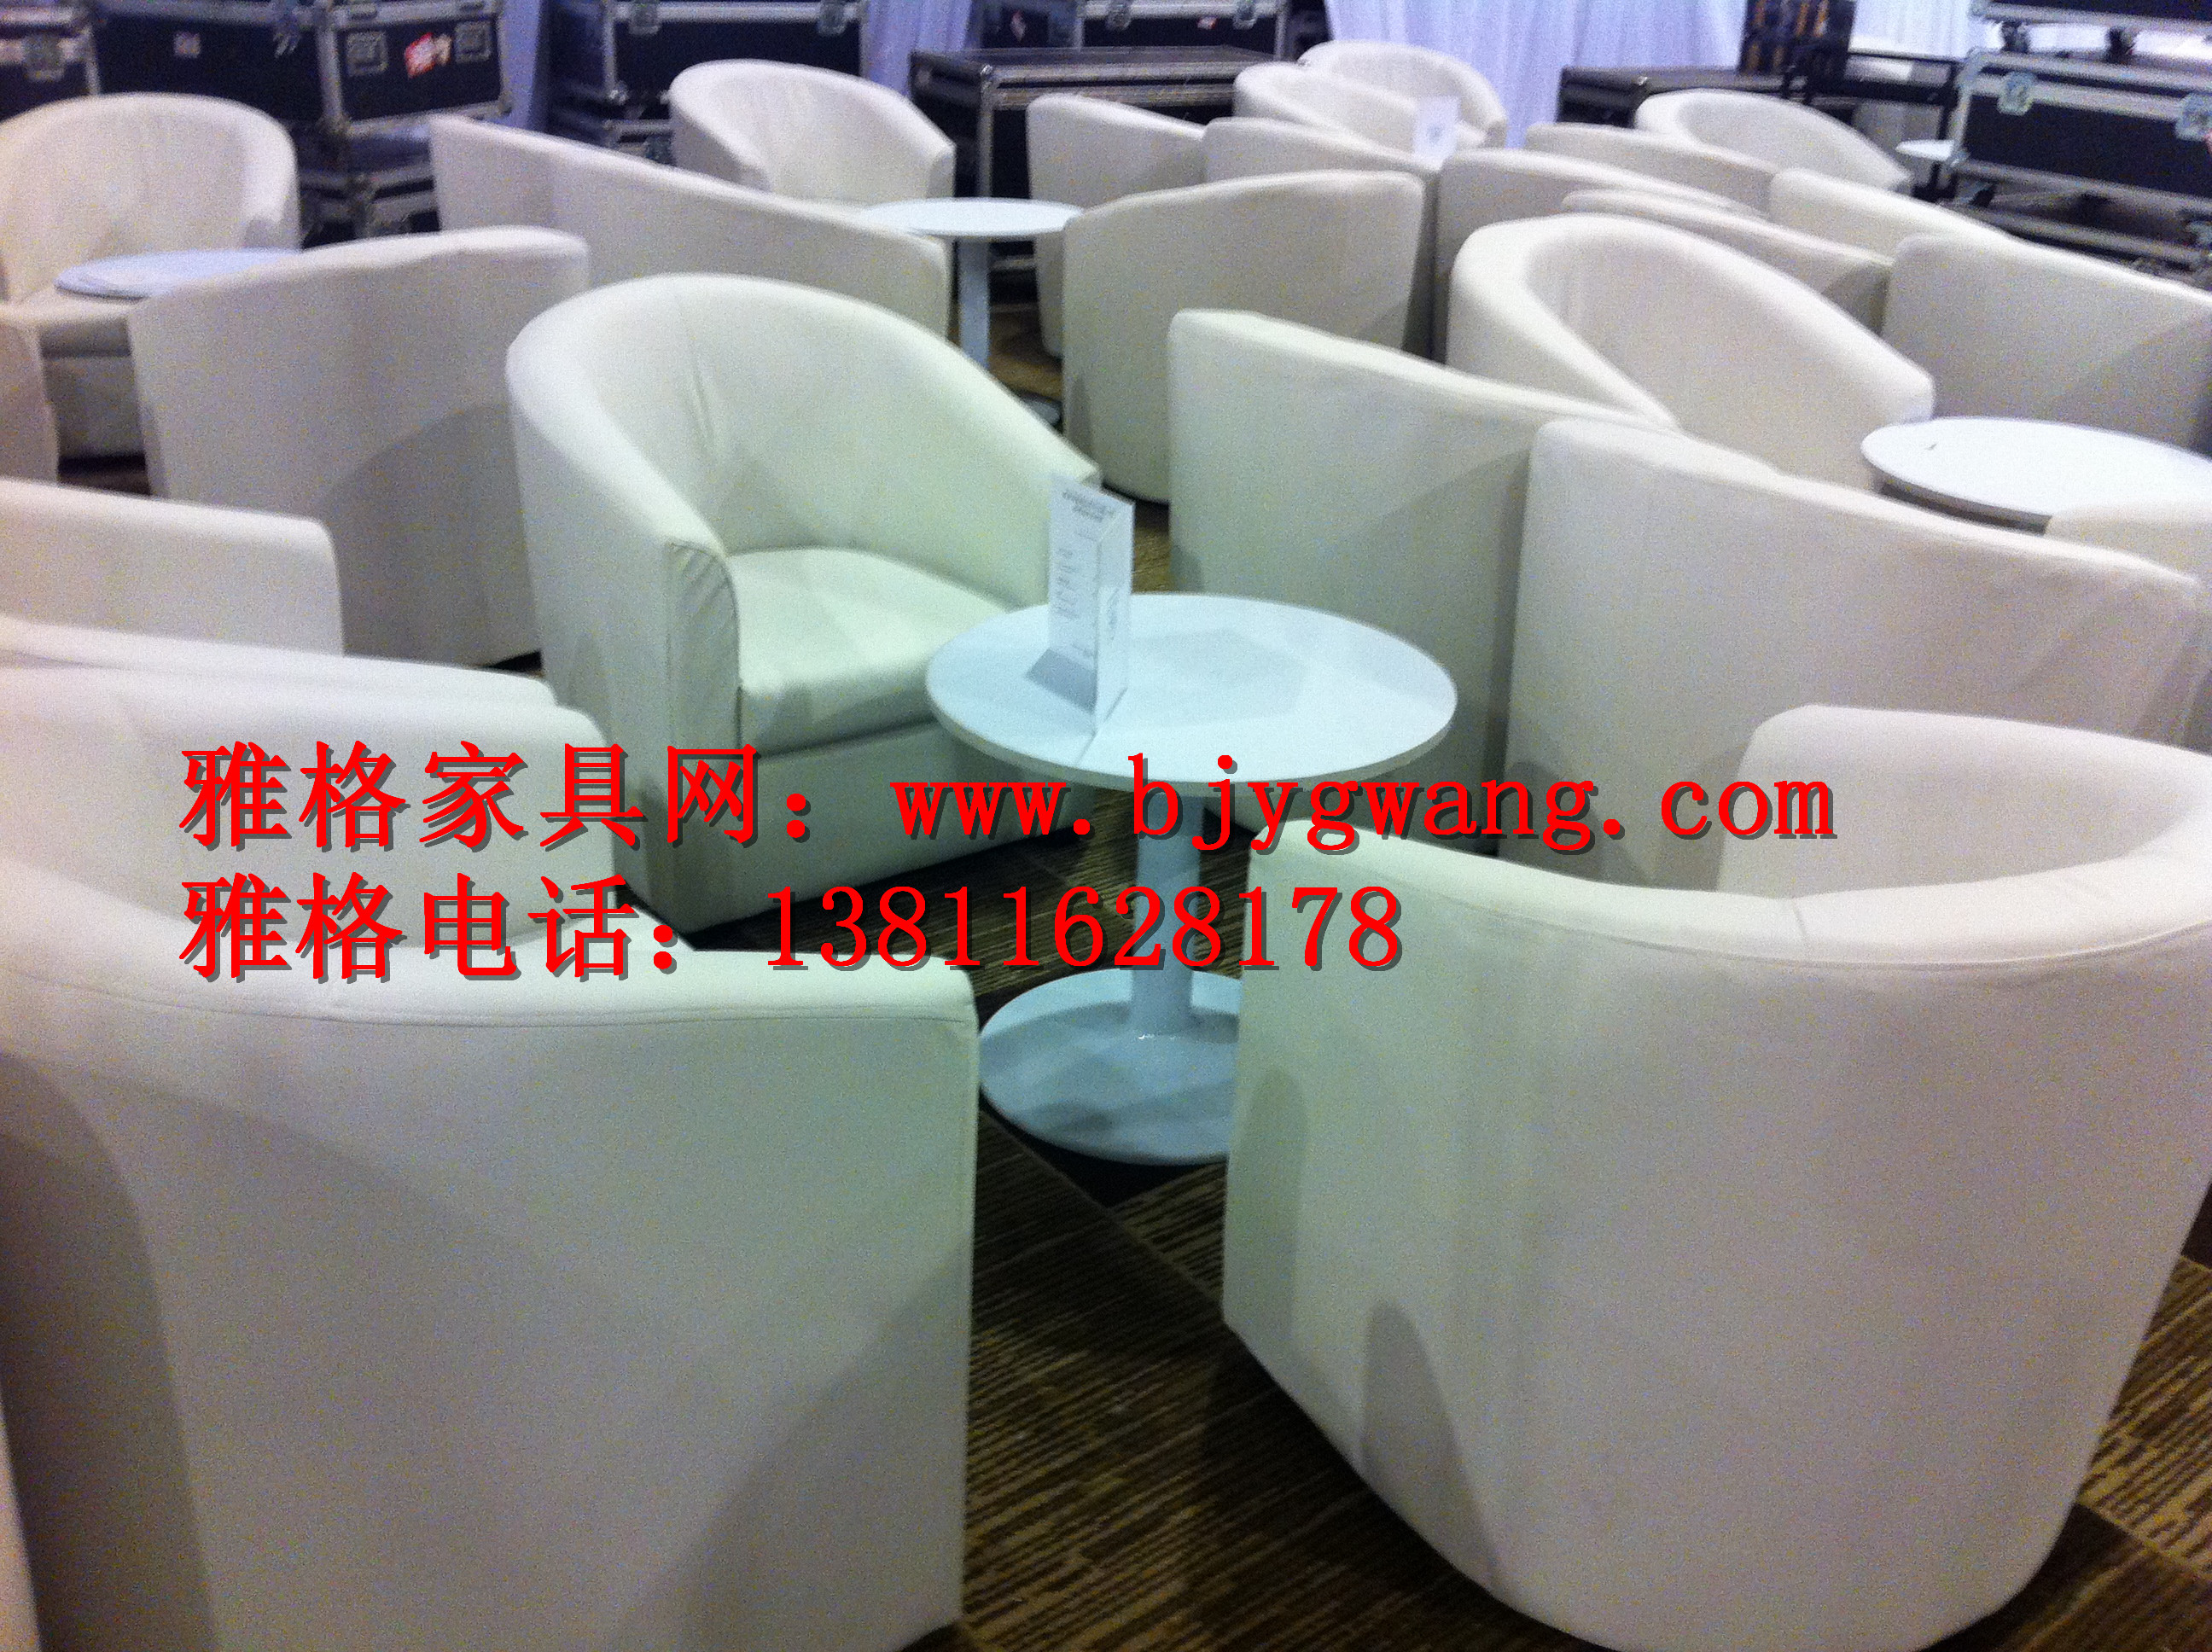 北京市单人沙发厂家北京上海 广州 会展沙发租赁单人沙发